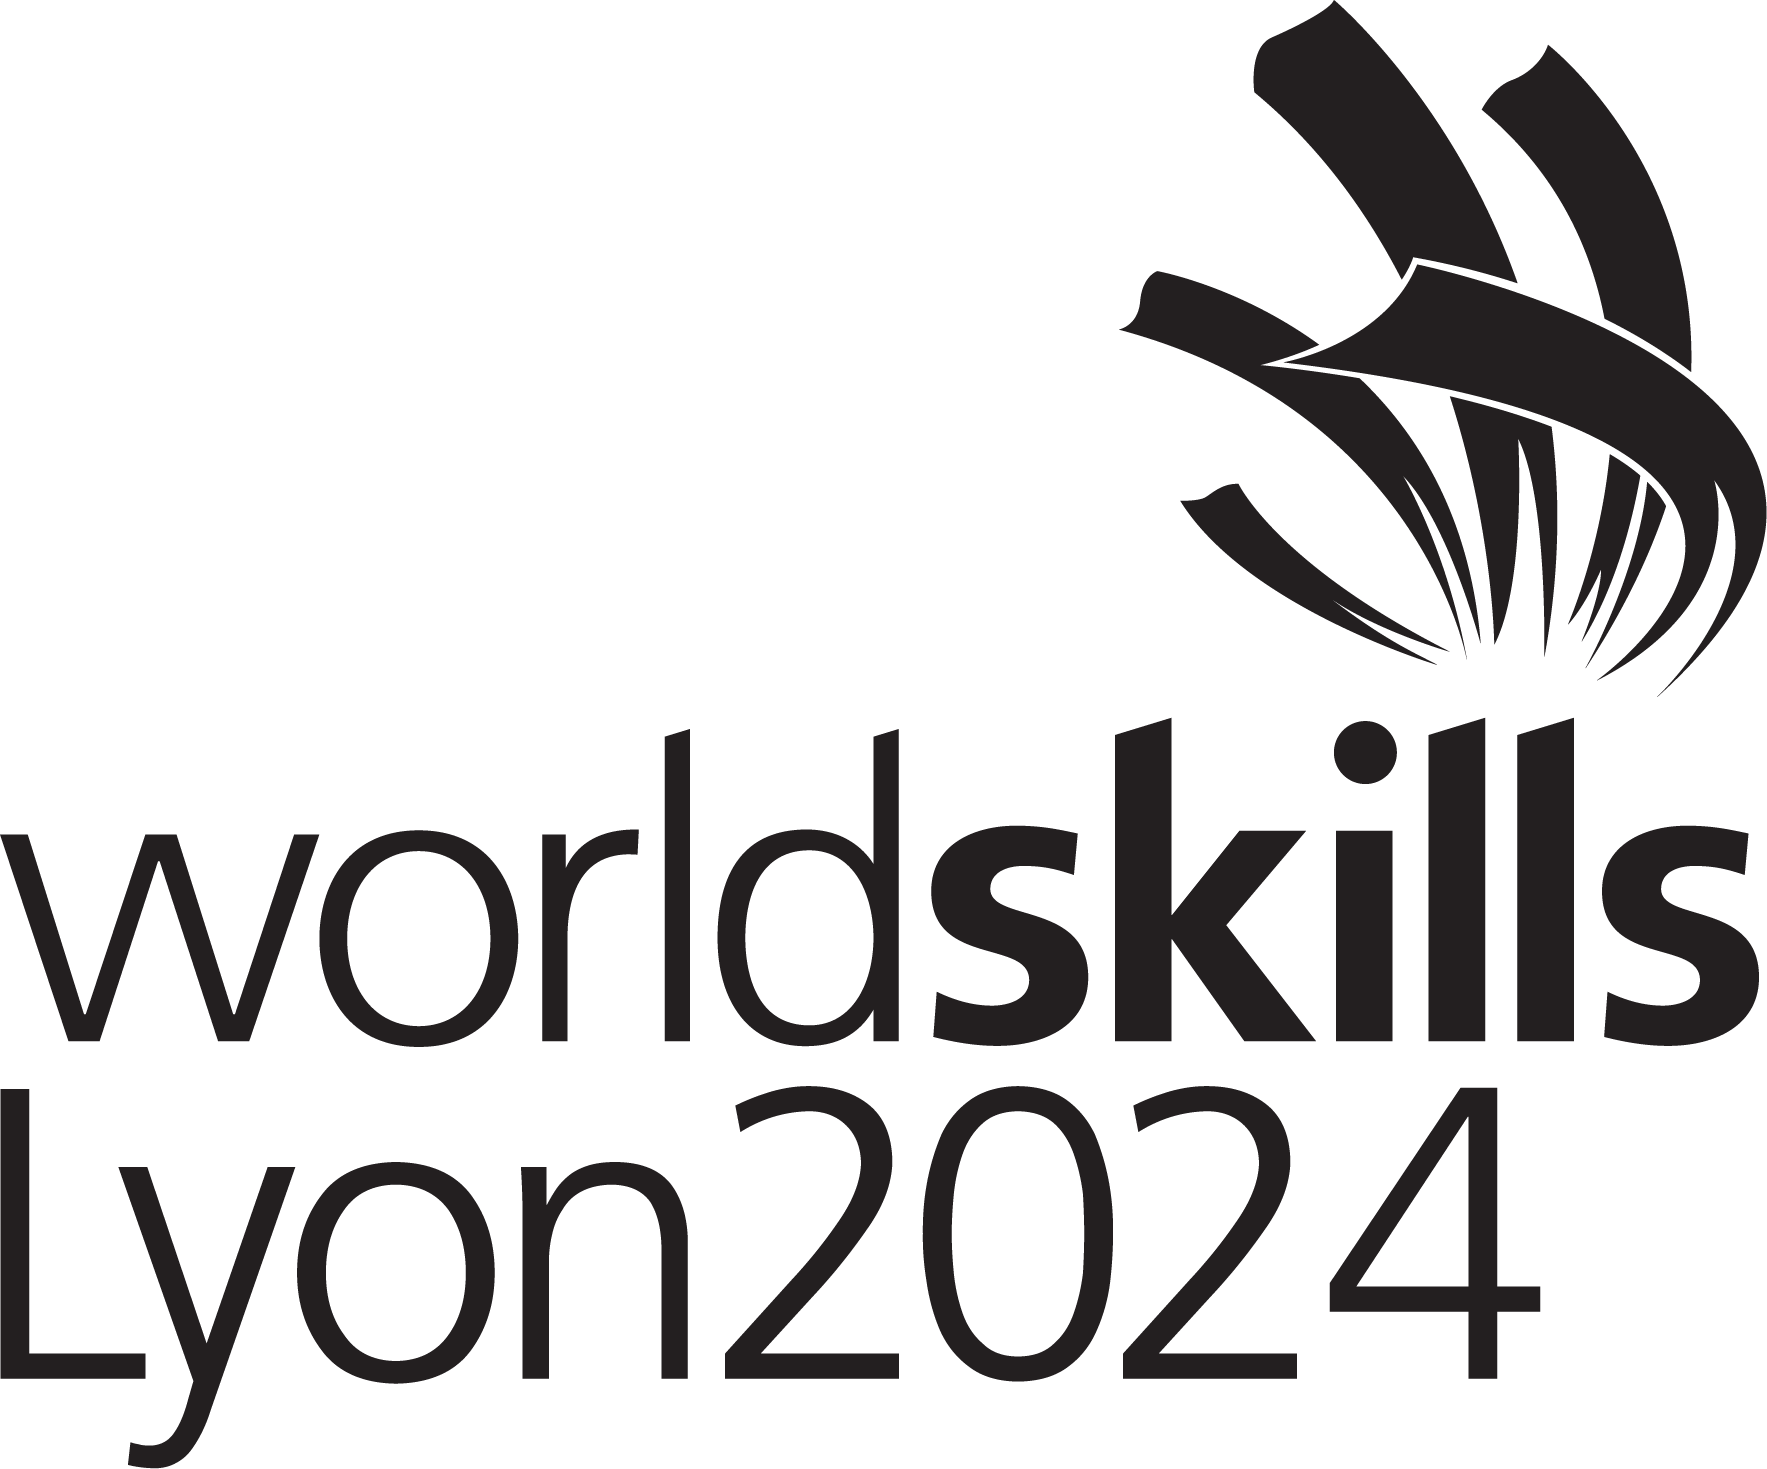 WorldSkills Lyon 2024